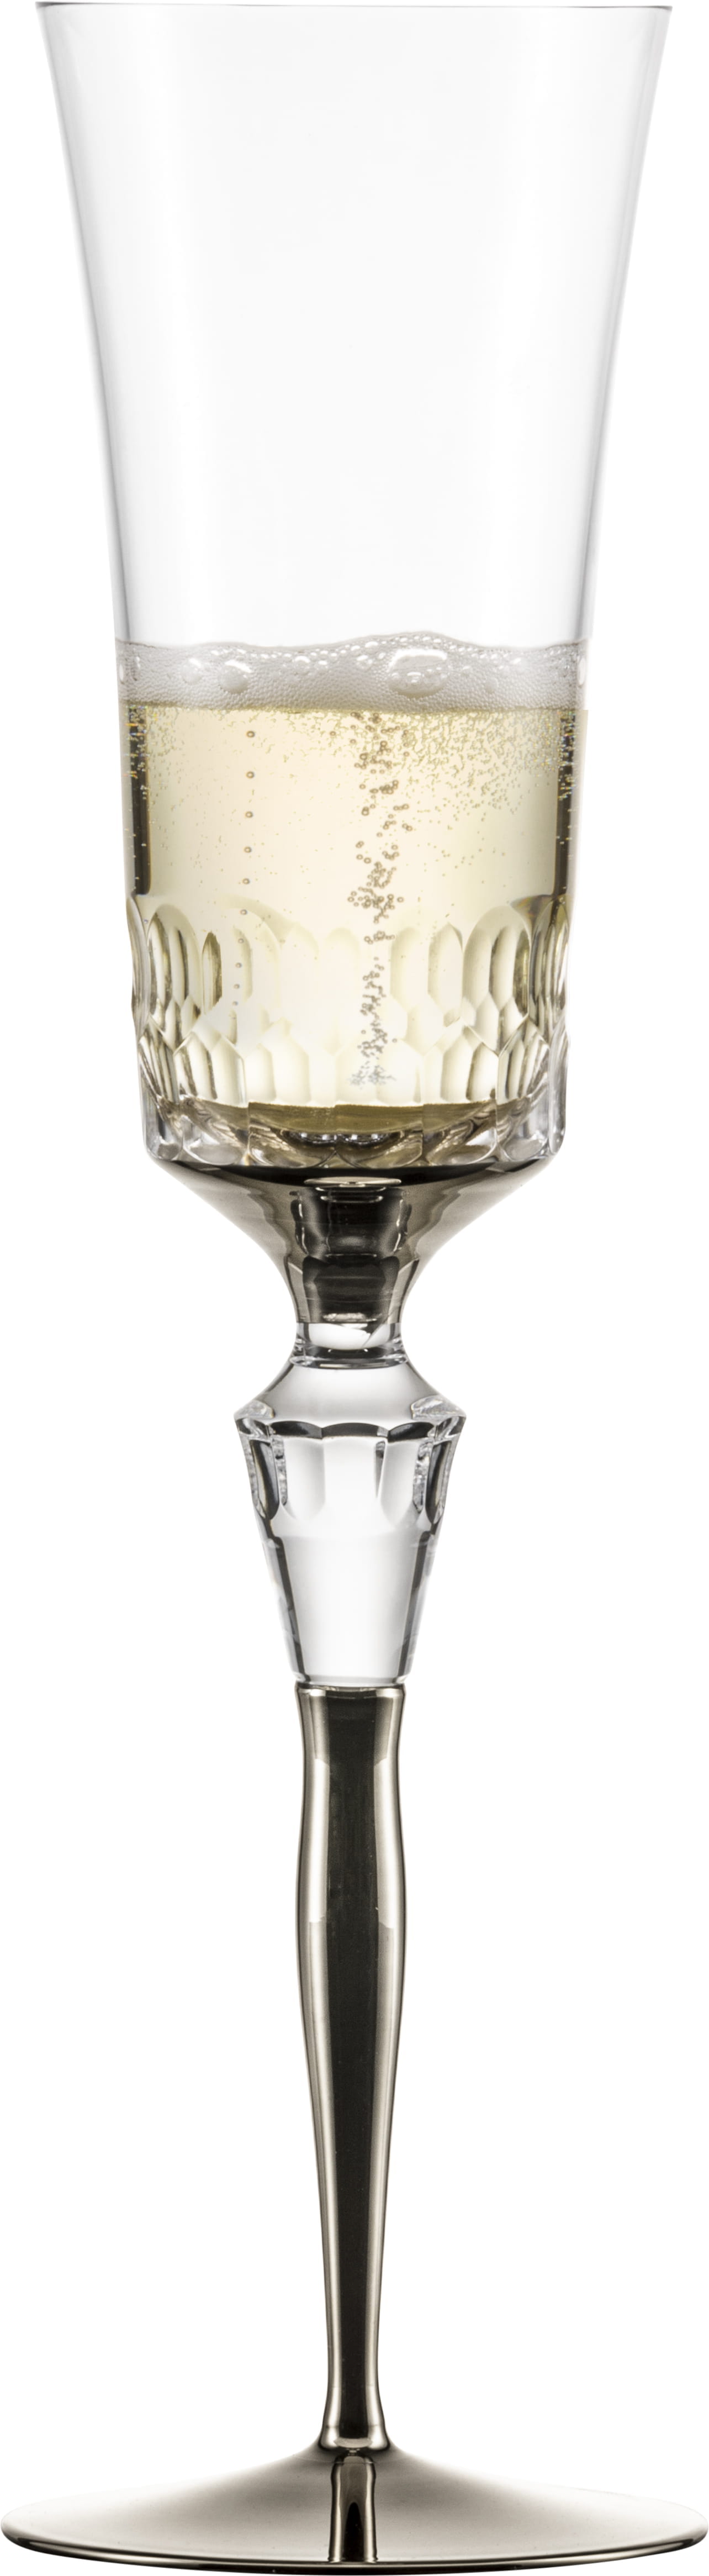 Eisch Glas Champagner Exklusiv 2 Champagnergläser 596/75 Platin im Geschenkkarton